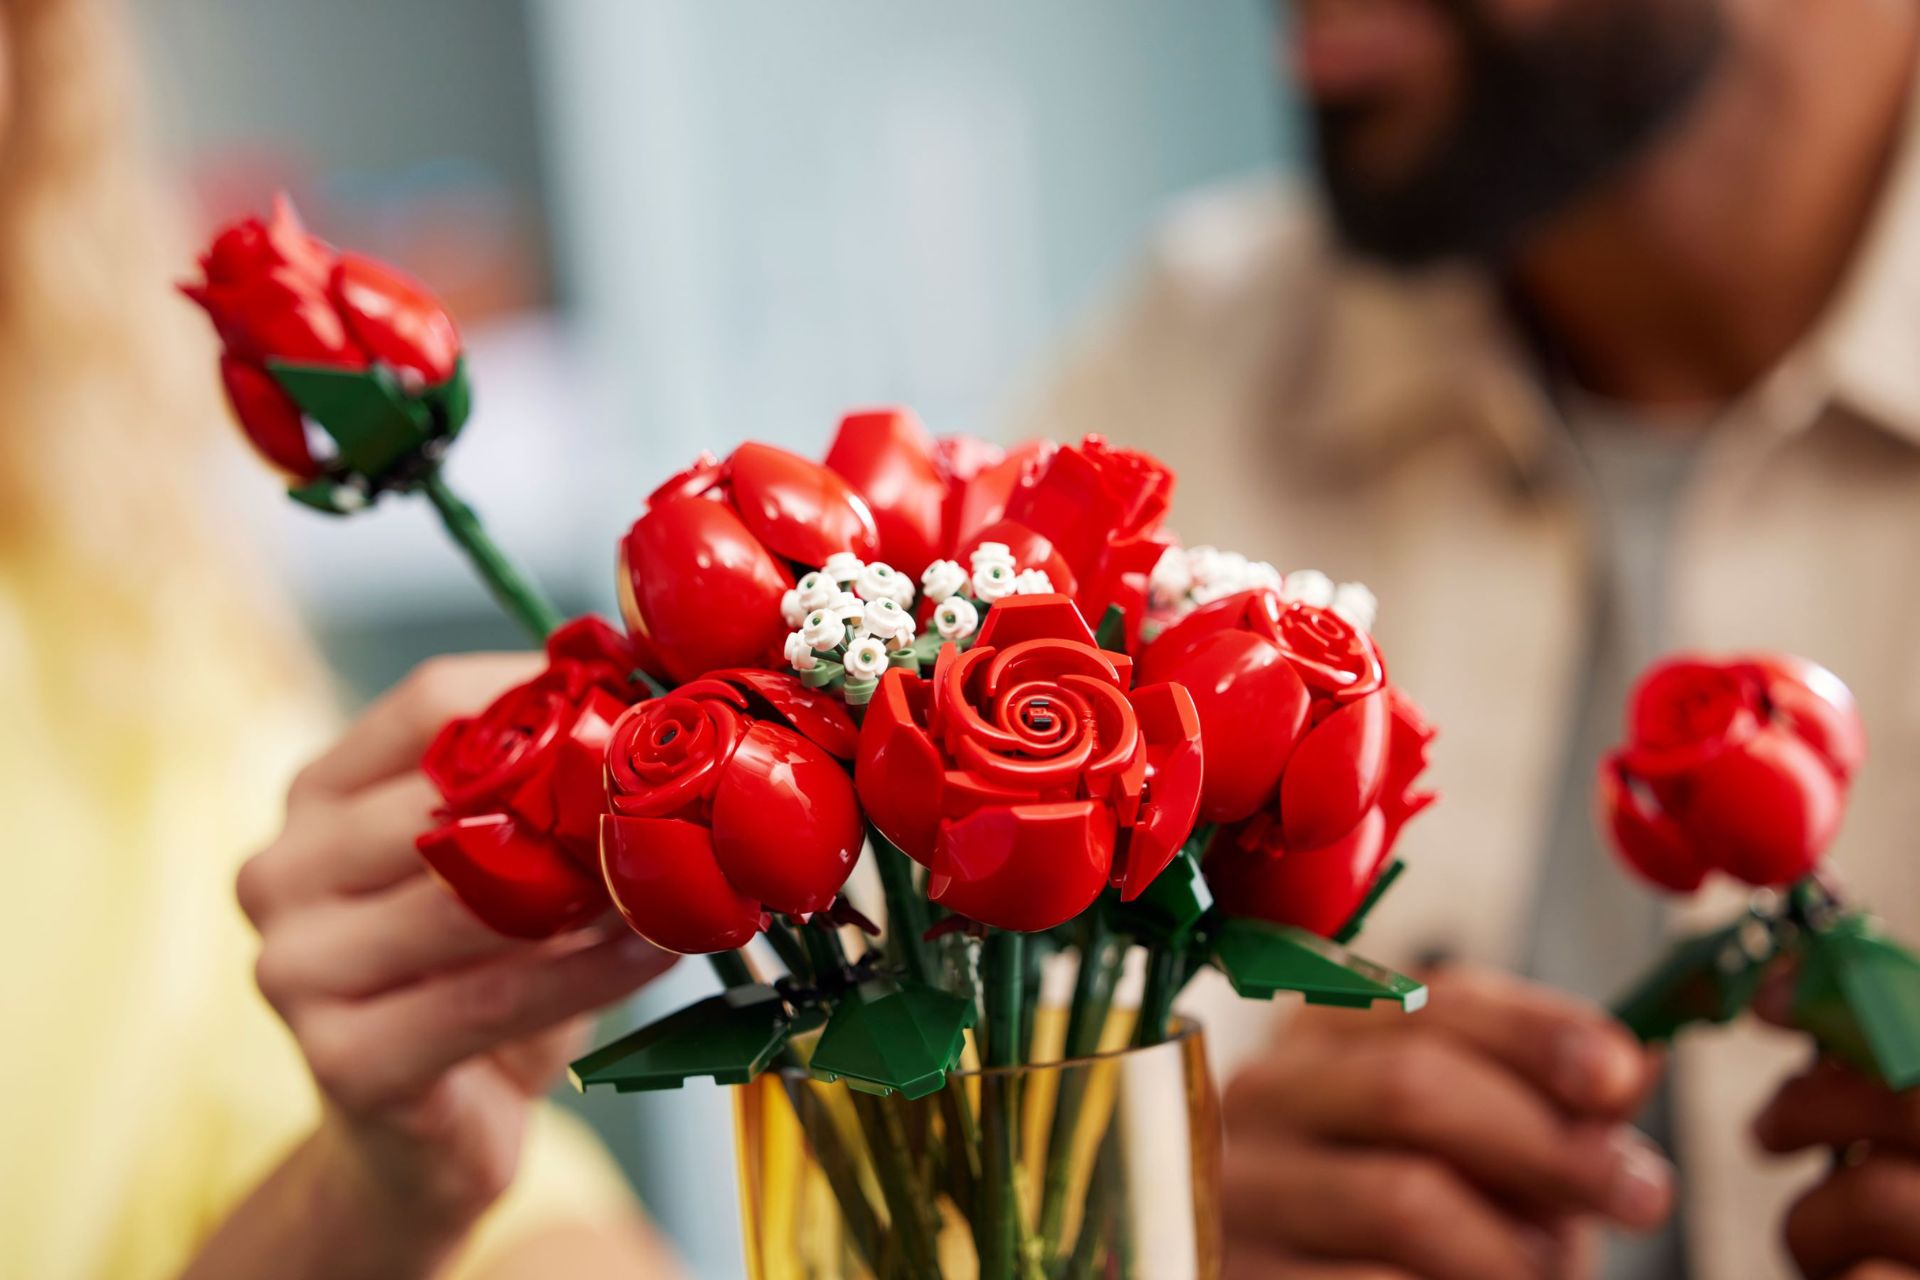 Le bouquet de roses Lego 10328 pour prouver votre amour